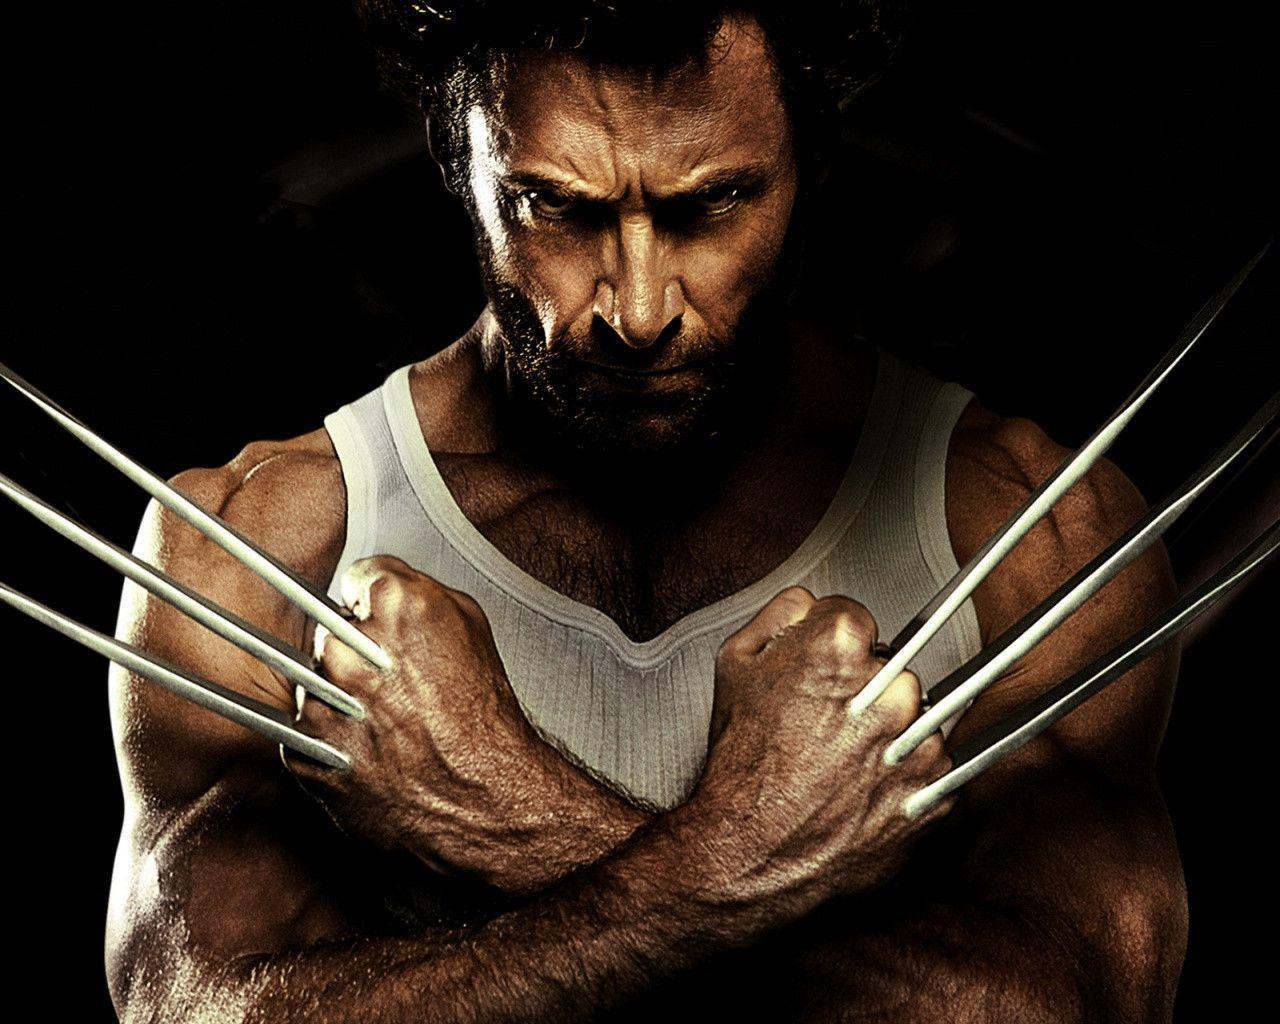 Wallpaper HD Wolverine X Men 1280 X 800 165 Kb Jpeg